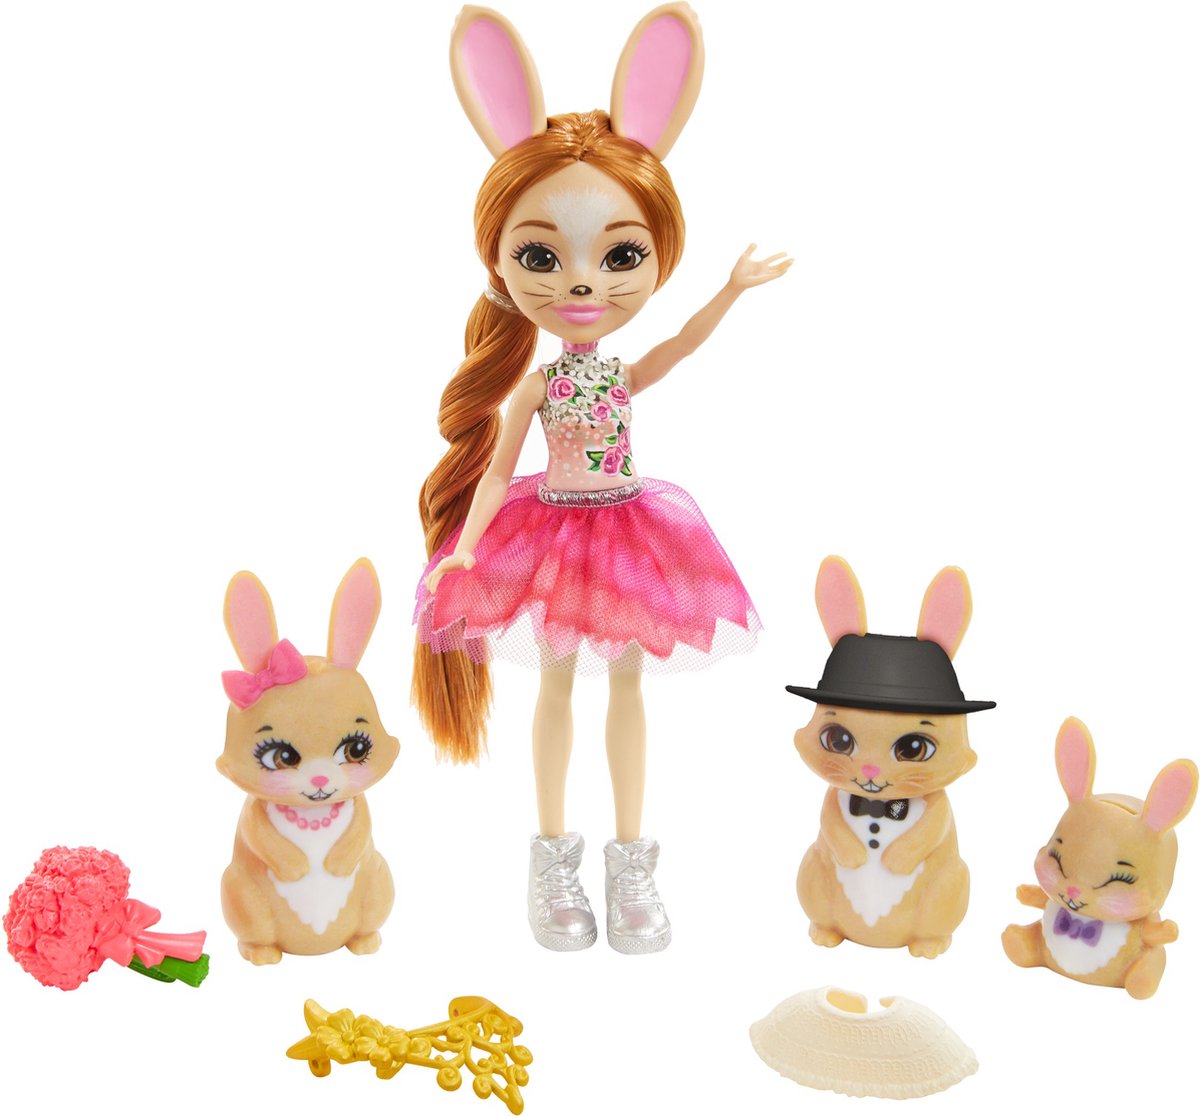 Enchantimals - Famille Loutre et accessoires - Mini-poupée - Dès 4